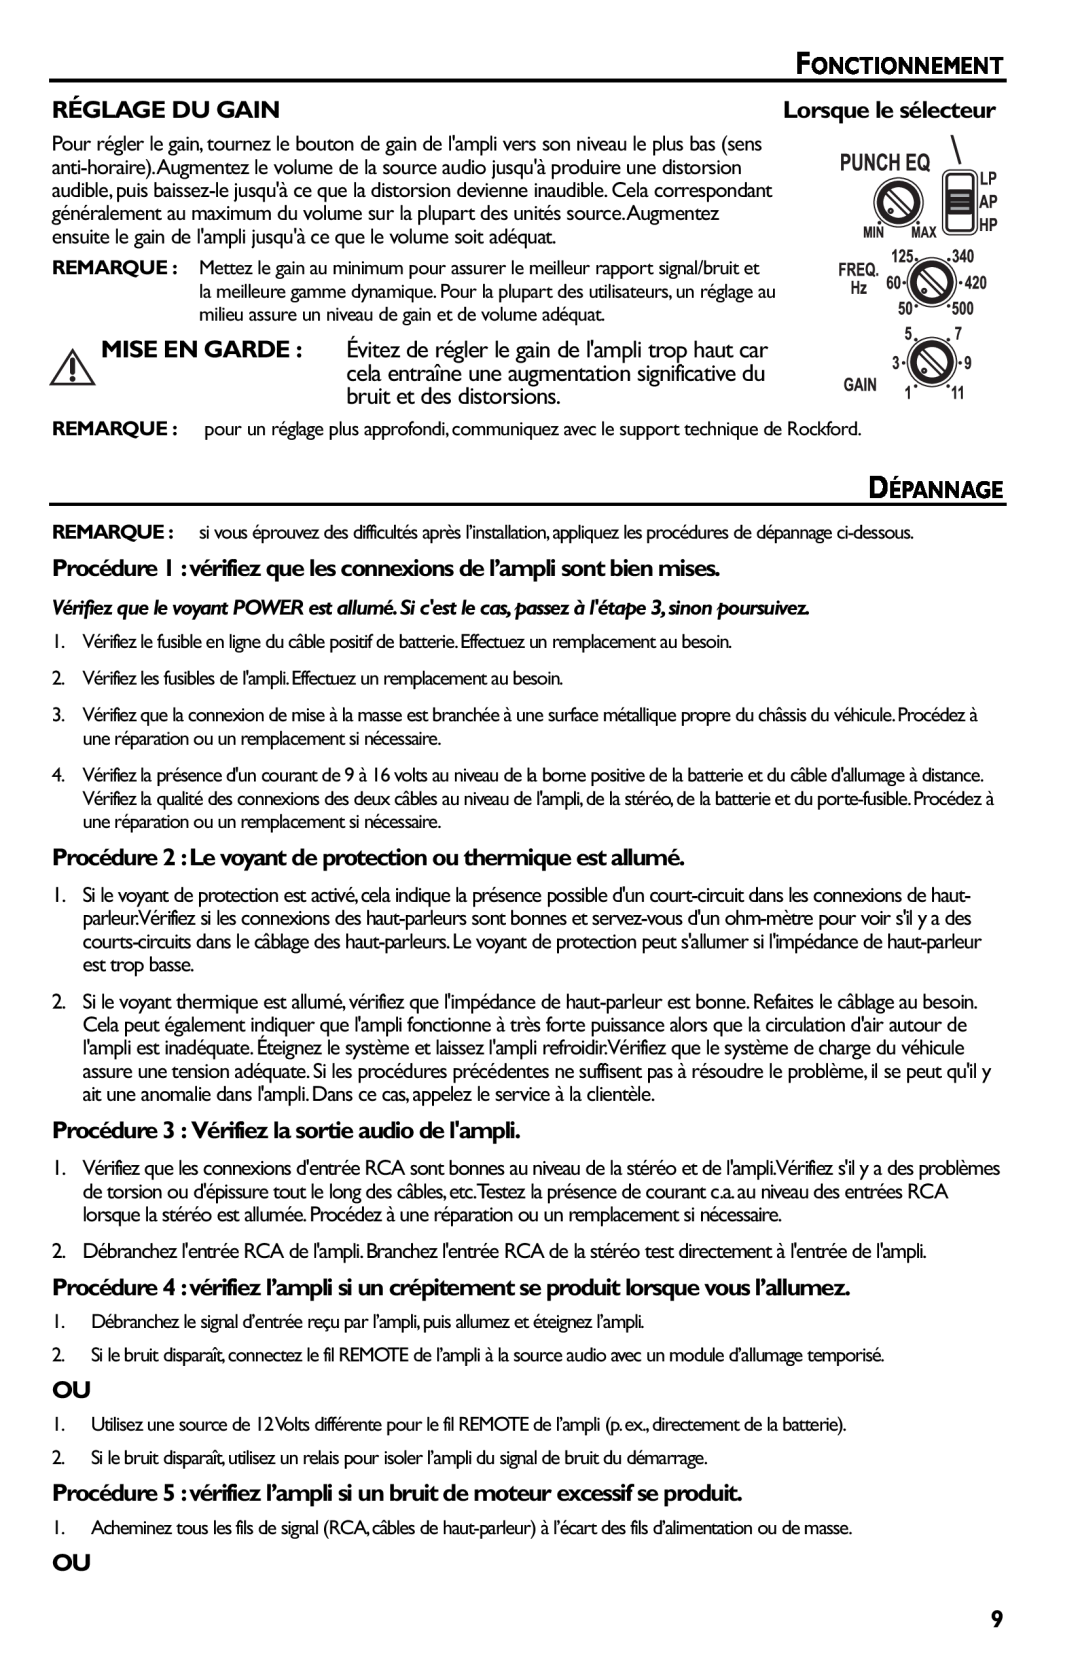 Rockford Fosgate p3002 manual Réglage Du Gain, Dépannage, Procédure 3 Vérifiez la sortie audio de lampli 